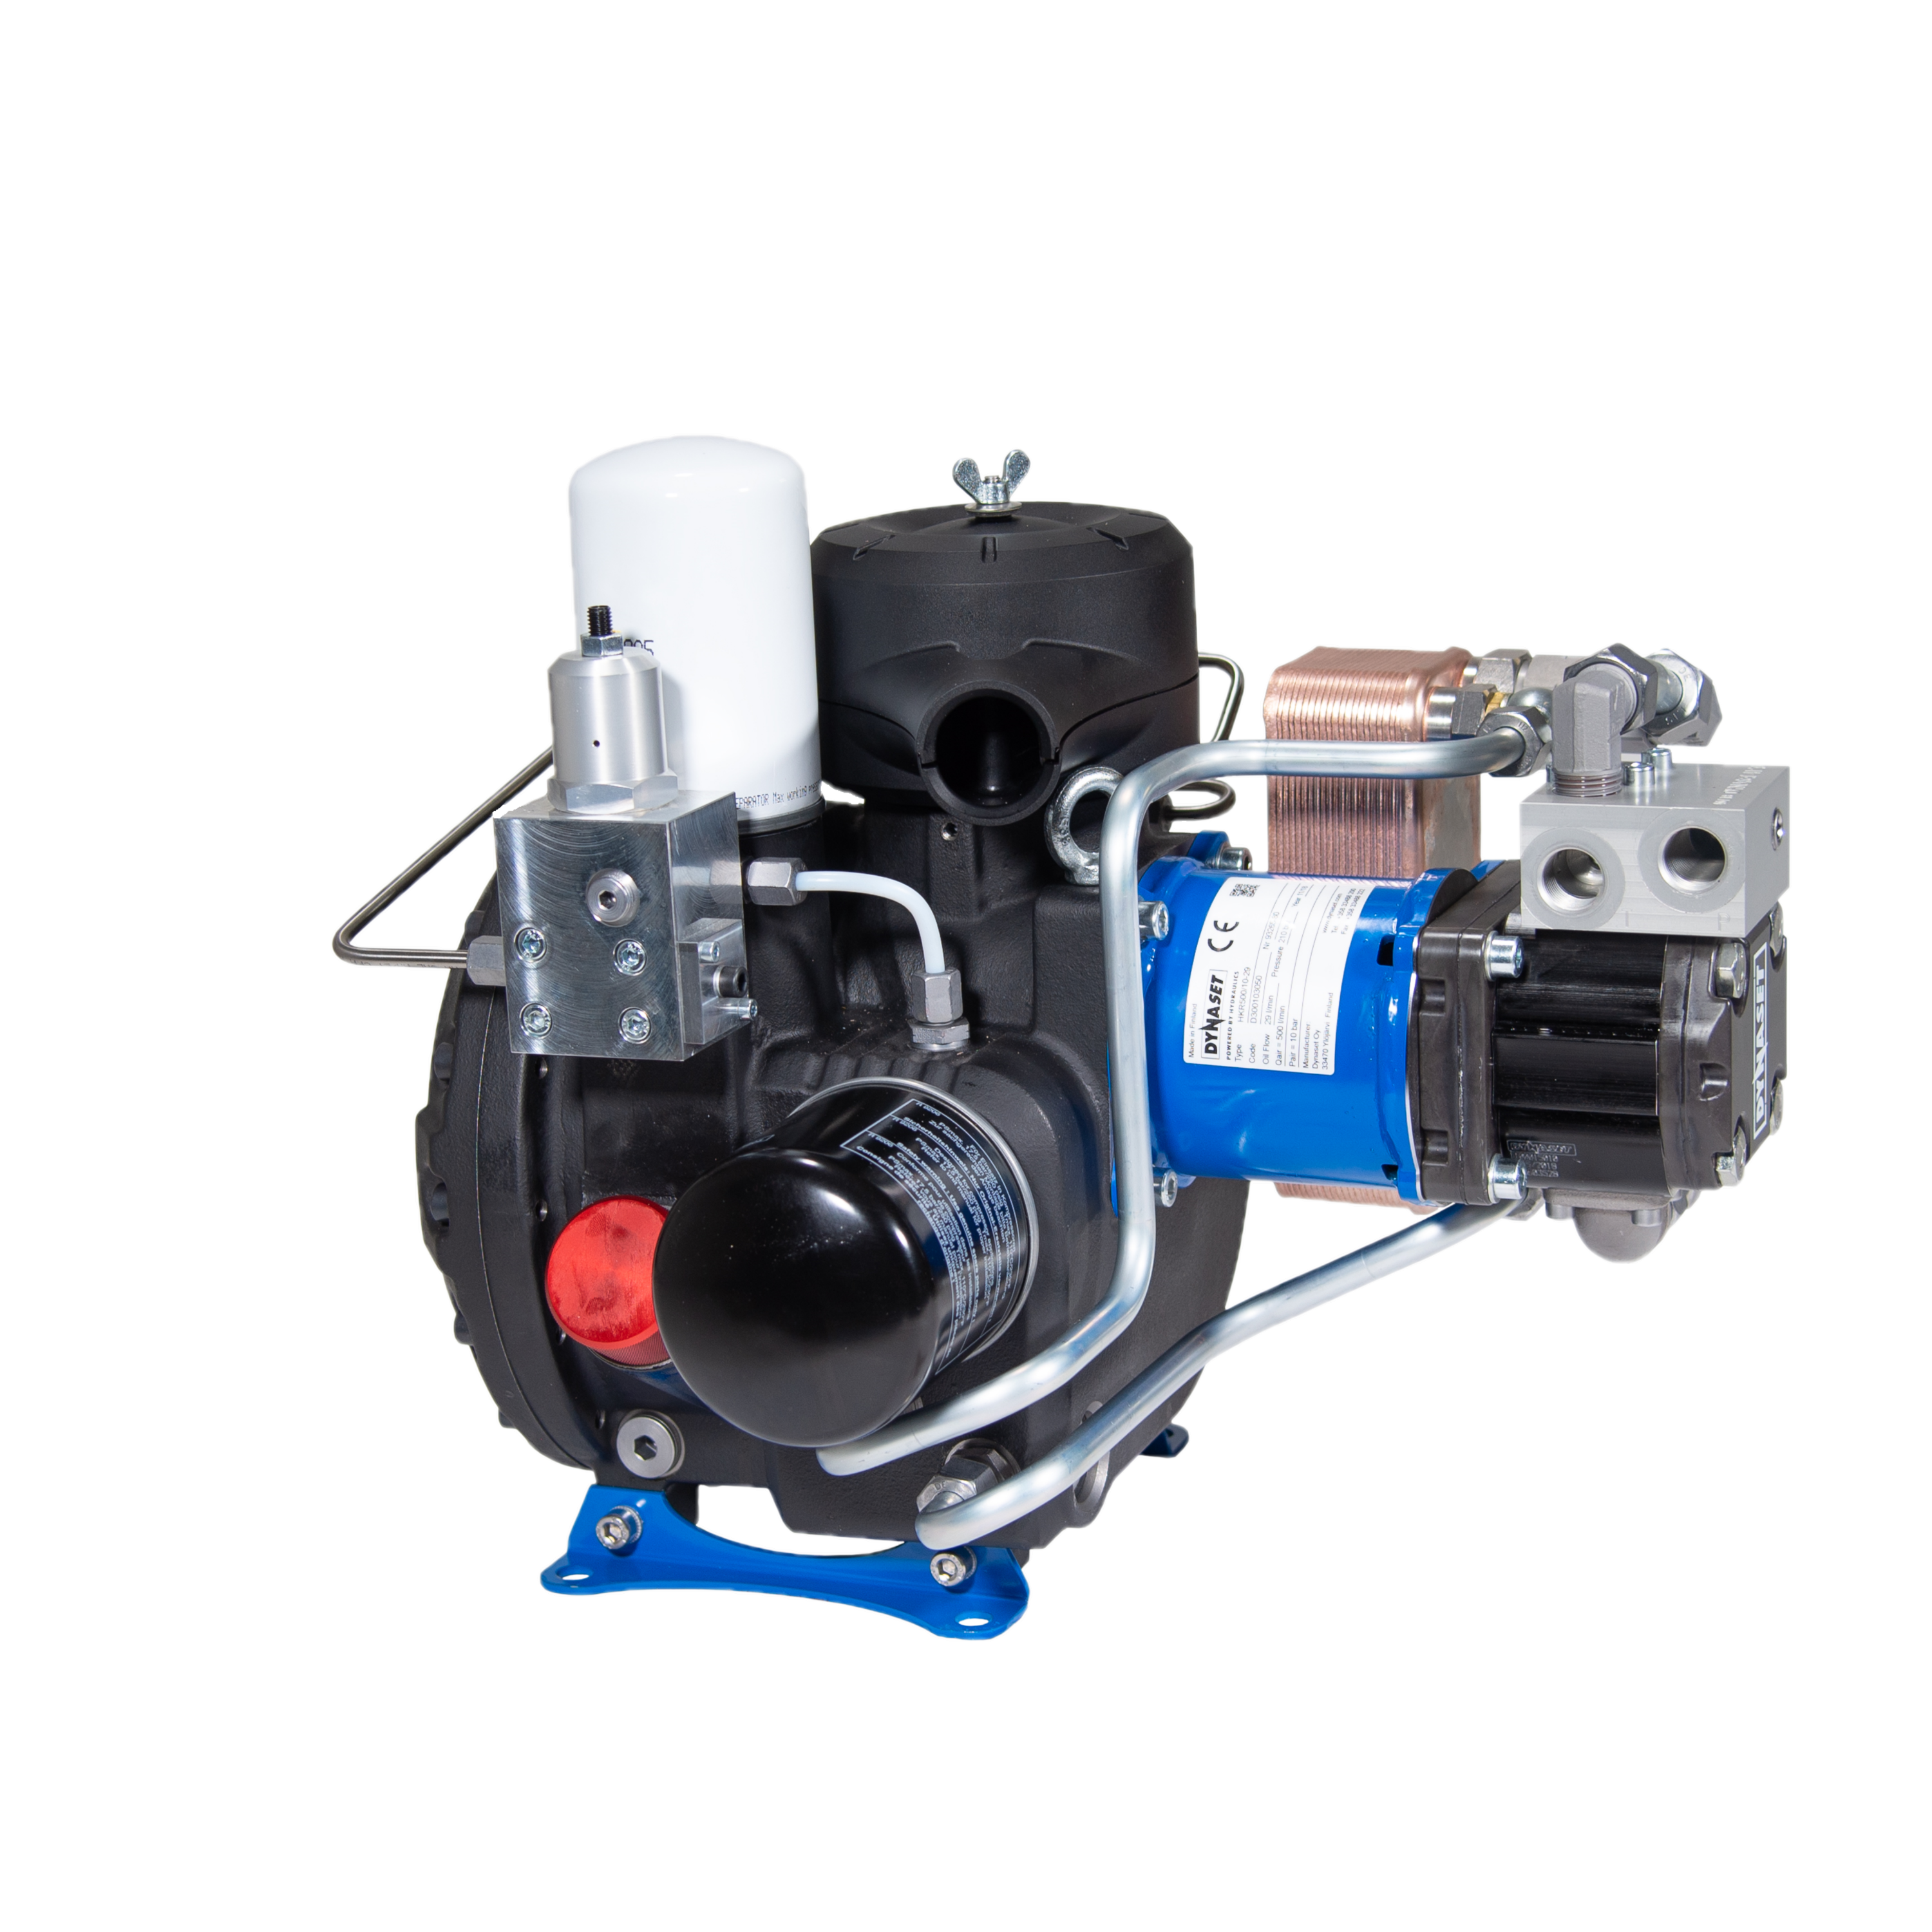 HKR800 - Hydraulisch angetriebener Druckluft-Schraubenkompressor 800 L/min. bei max. 10 bar (145 PSI)